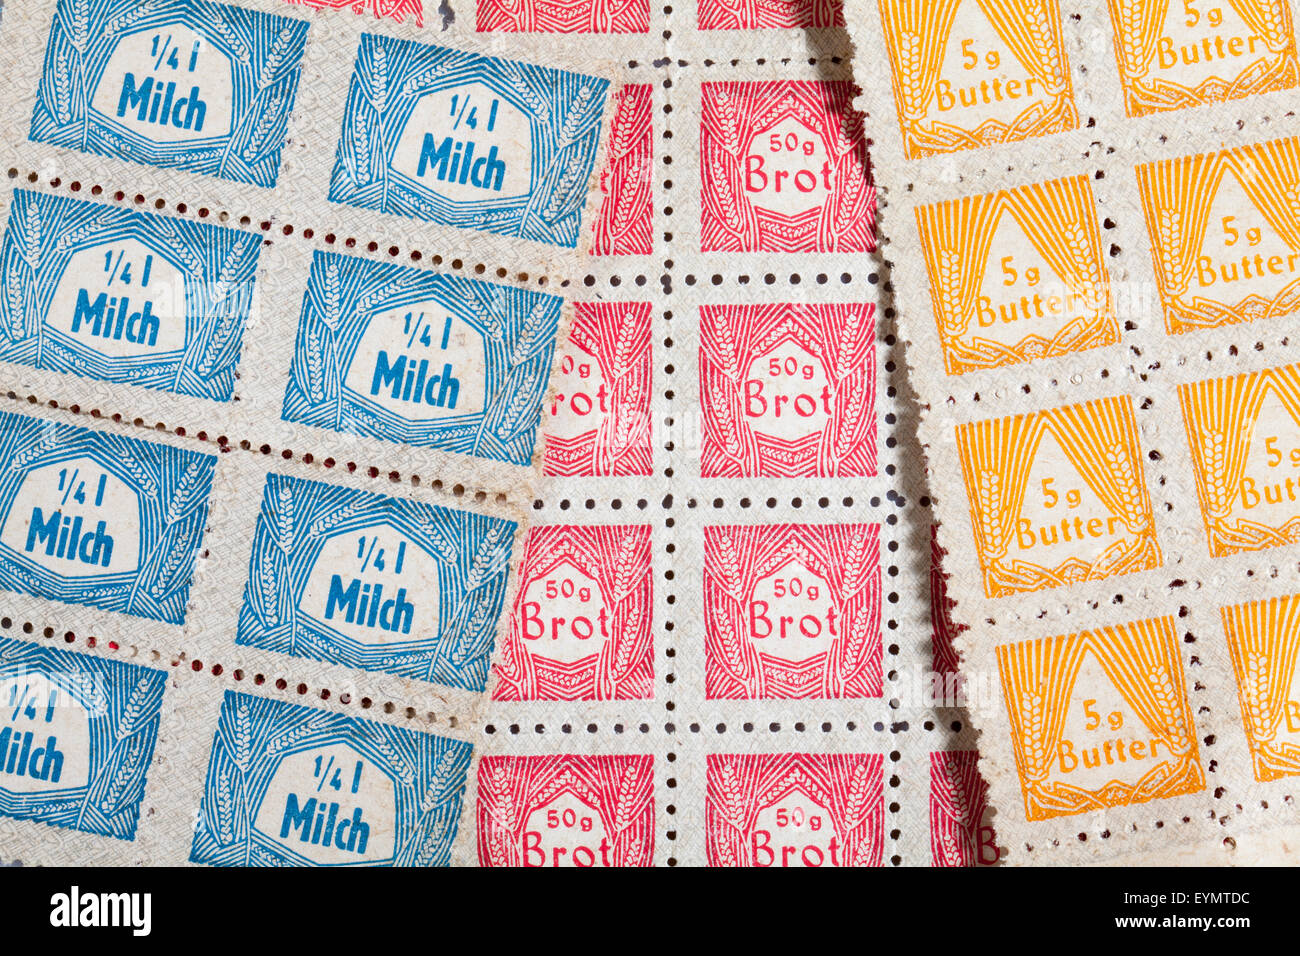 Les cartes de rationnement de l'après-guerre d'acheter des produits pour la Nutrition, 1950, Berlin, République fédérale d'Allemagne, de l'Europe Banque D'Images